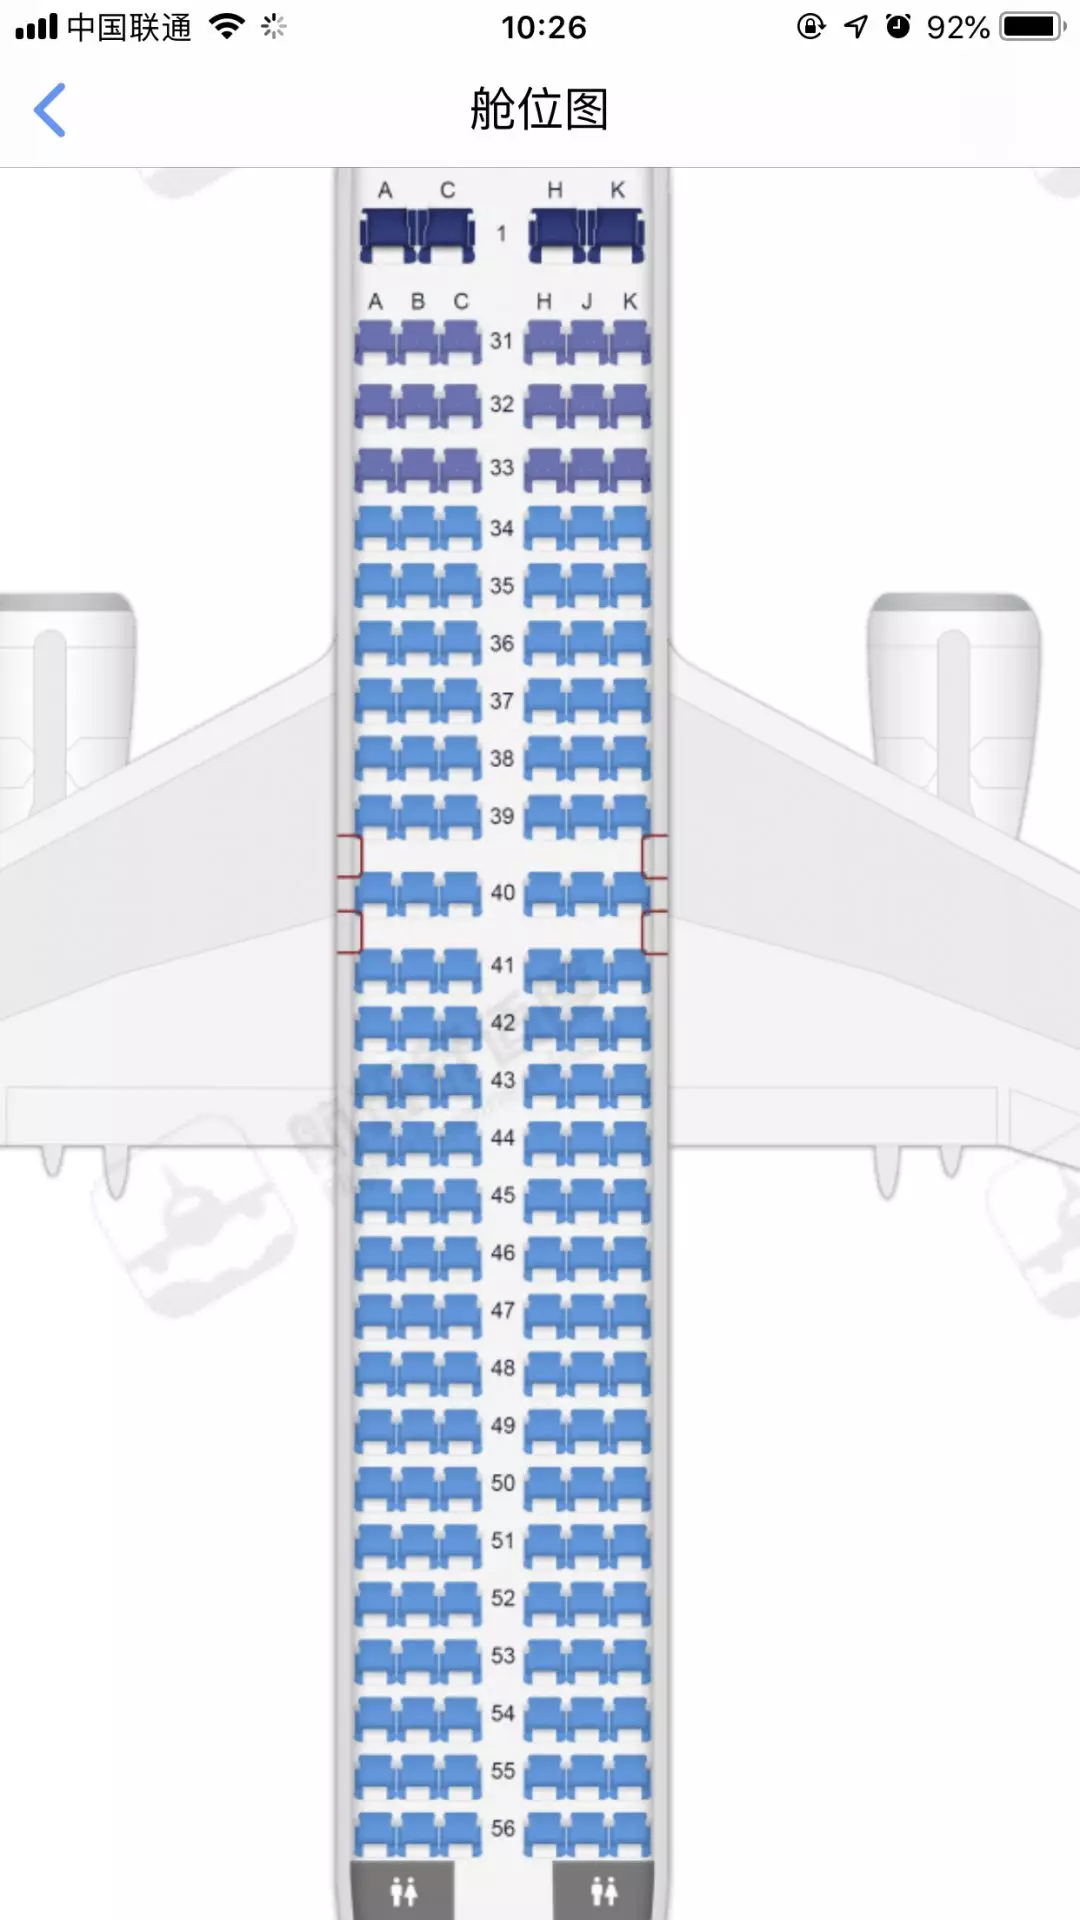 飞机29排座最佳座位图图片